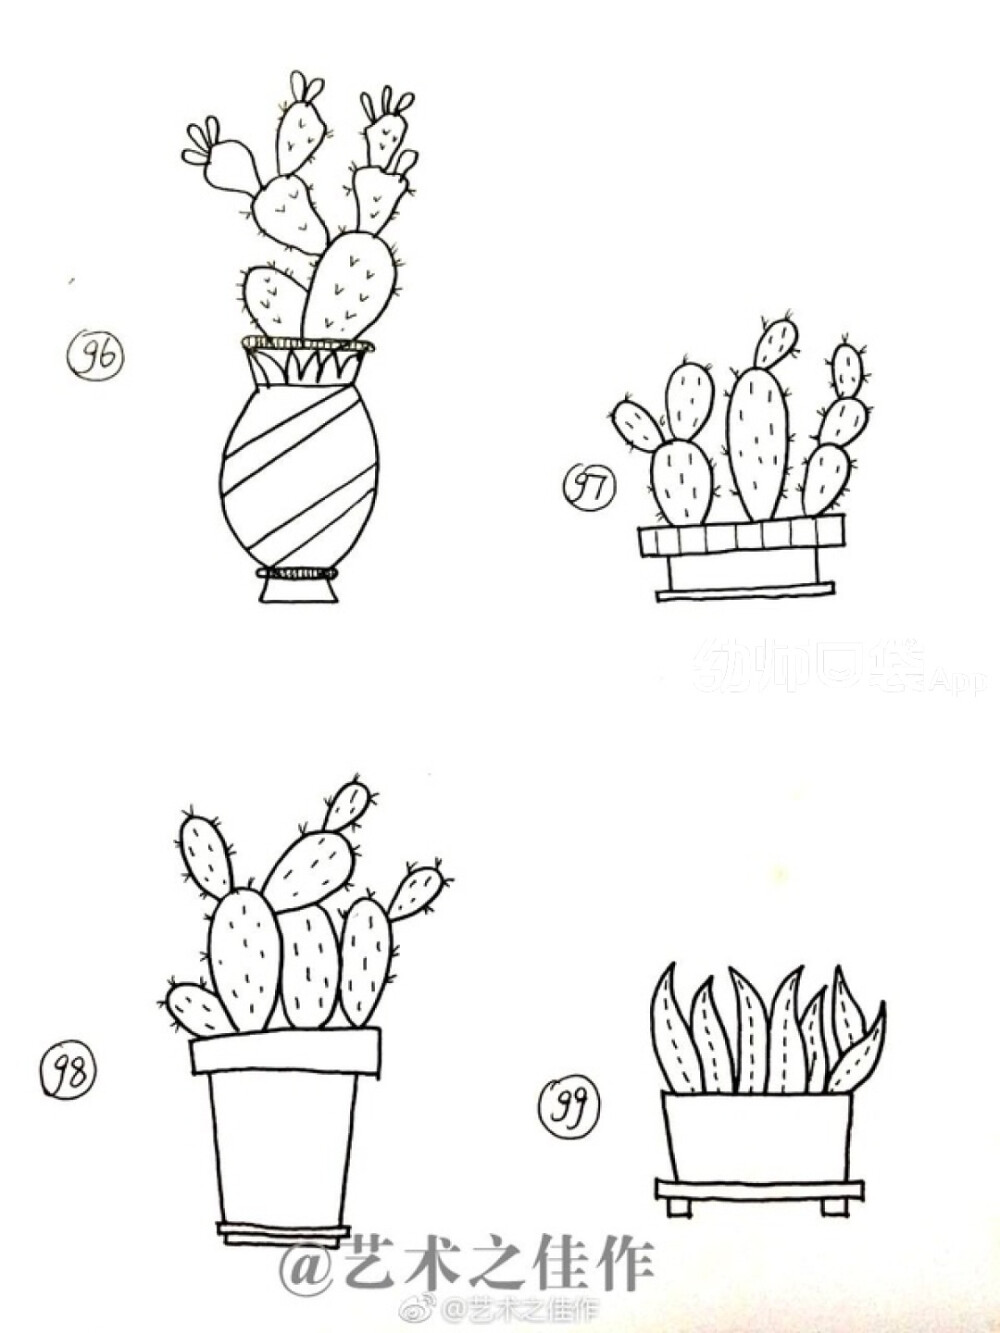 概括法简笔画植物图片